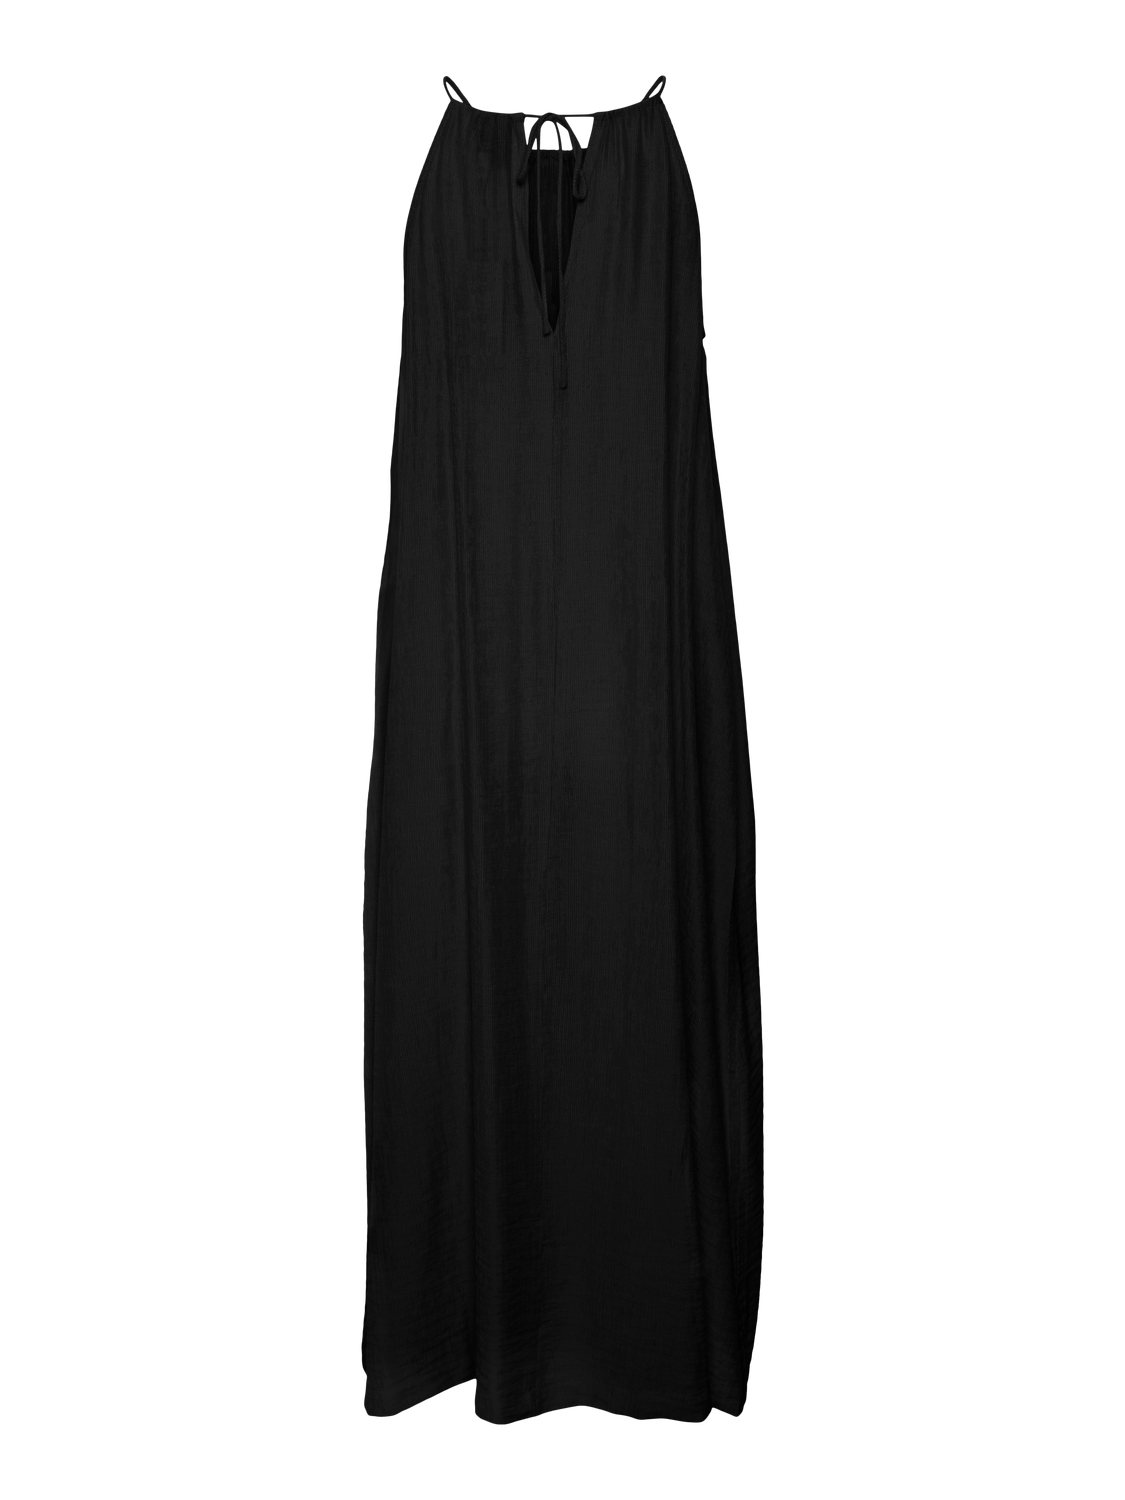 Vero Moda VMOURA Midi dress -Black - 10309412